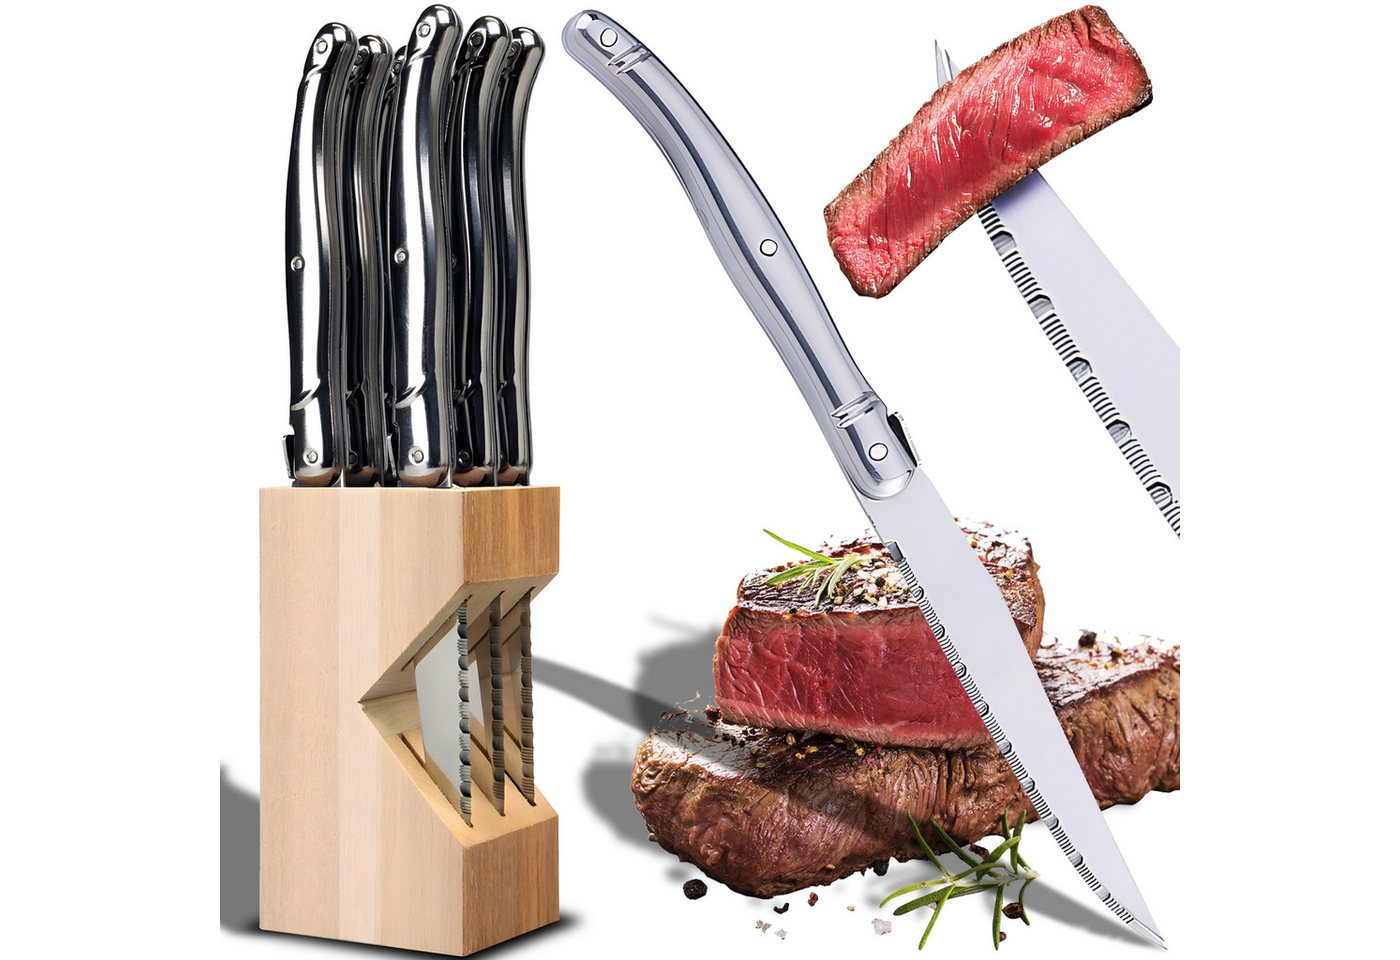 Retoo Steakmesser Küchenmesser Set 6-teilig Messerblock Holz Steakmesserset Messerset Komfortabler Griff, Gezahnte Klinge, Messerblock-Set, Profi-Set von Retoo